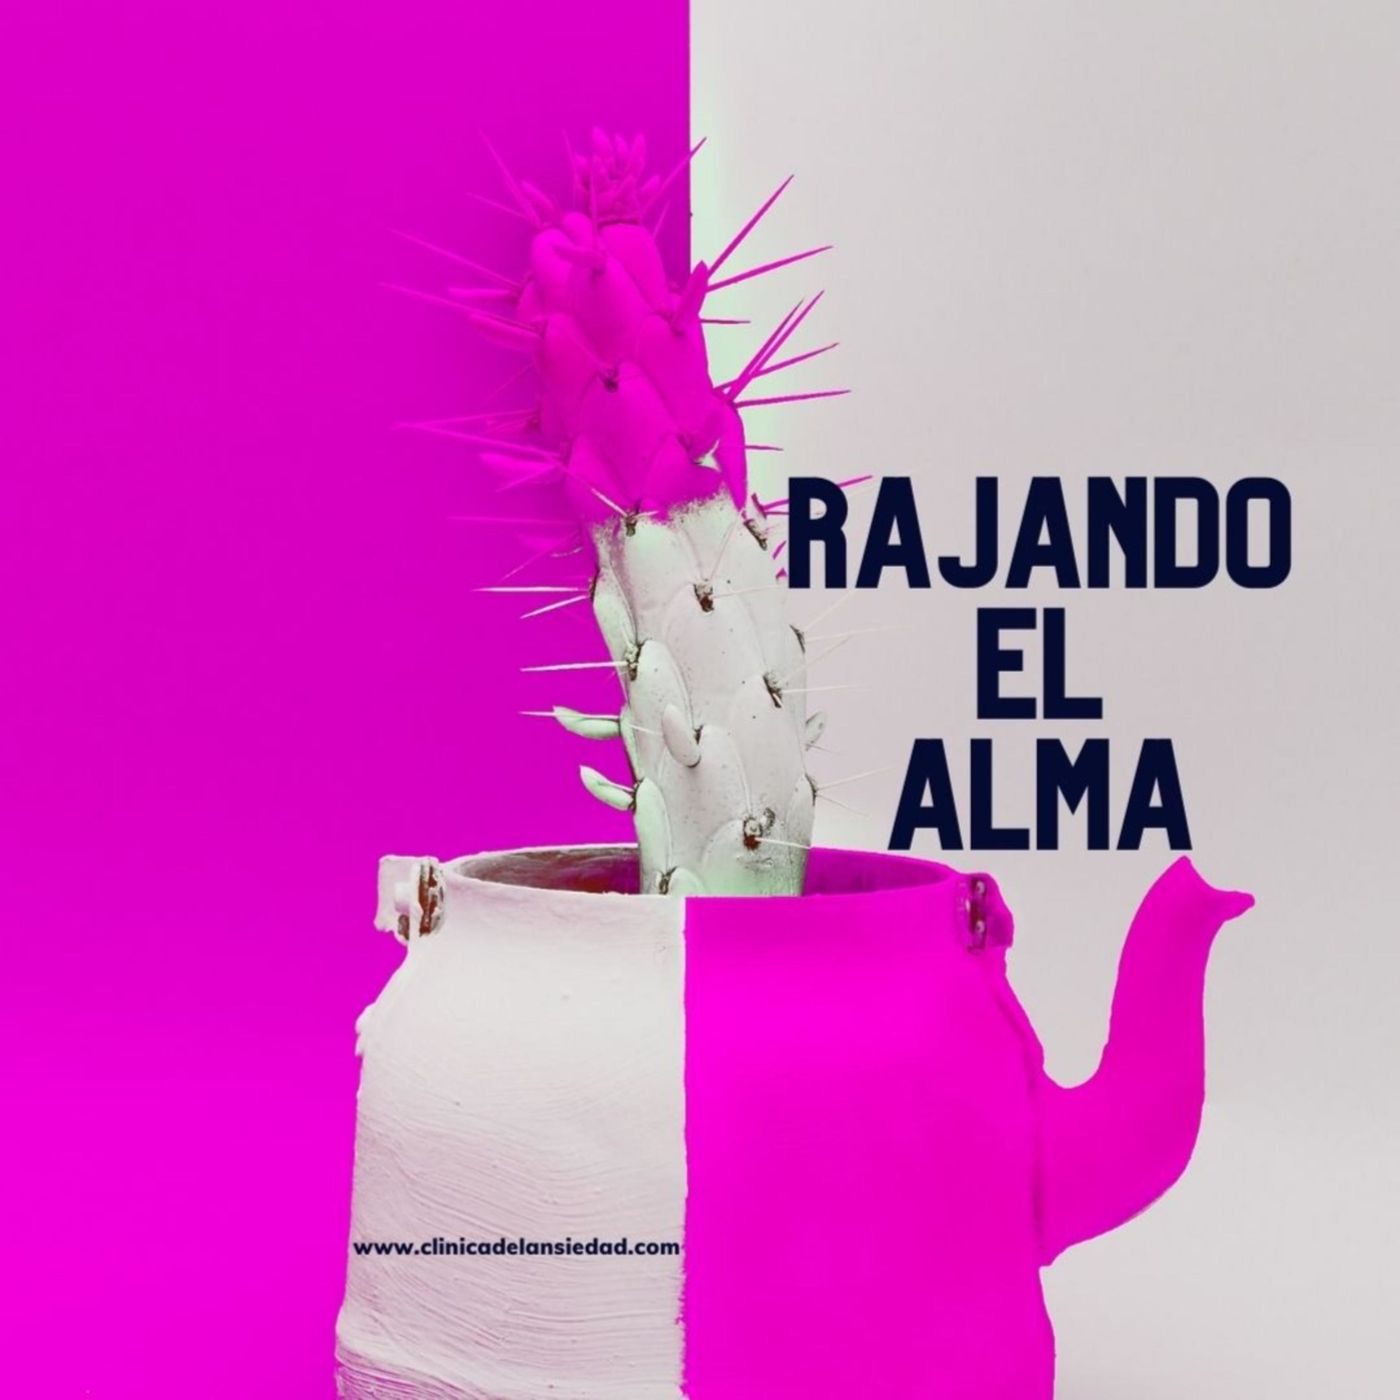 Rajando el Alma (Trailer)